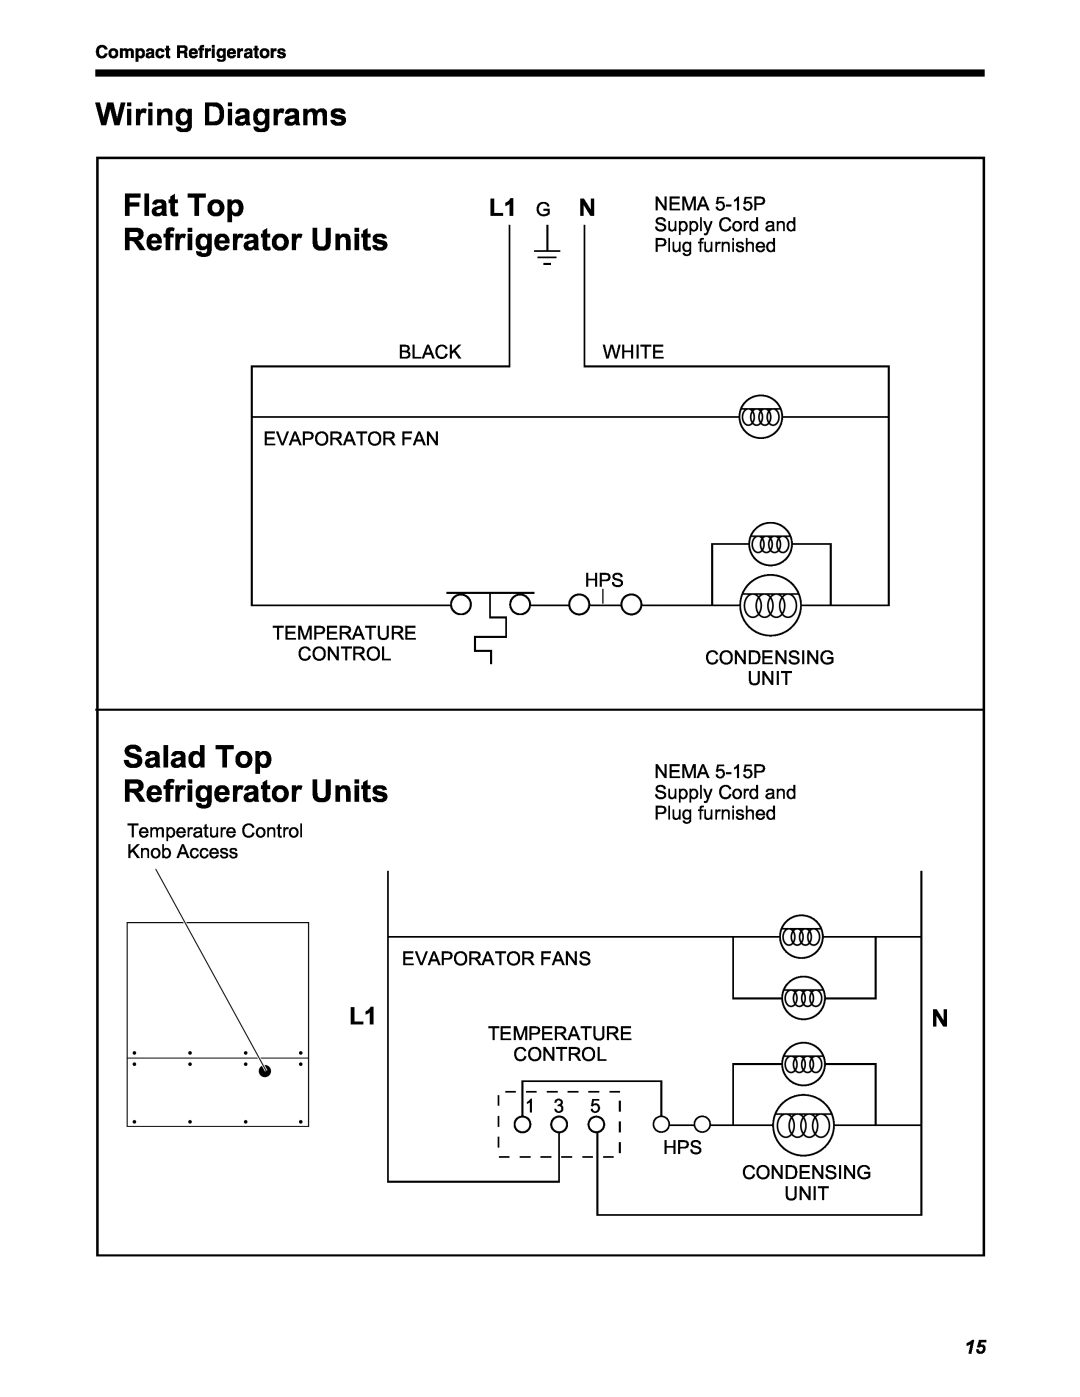 Delfield STD4432N, D4464N, D4460N Wiring Diagrams, Flat Top Refrigerator Units, Salad Top Refrigerator Units, L1 G N 